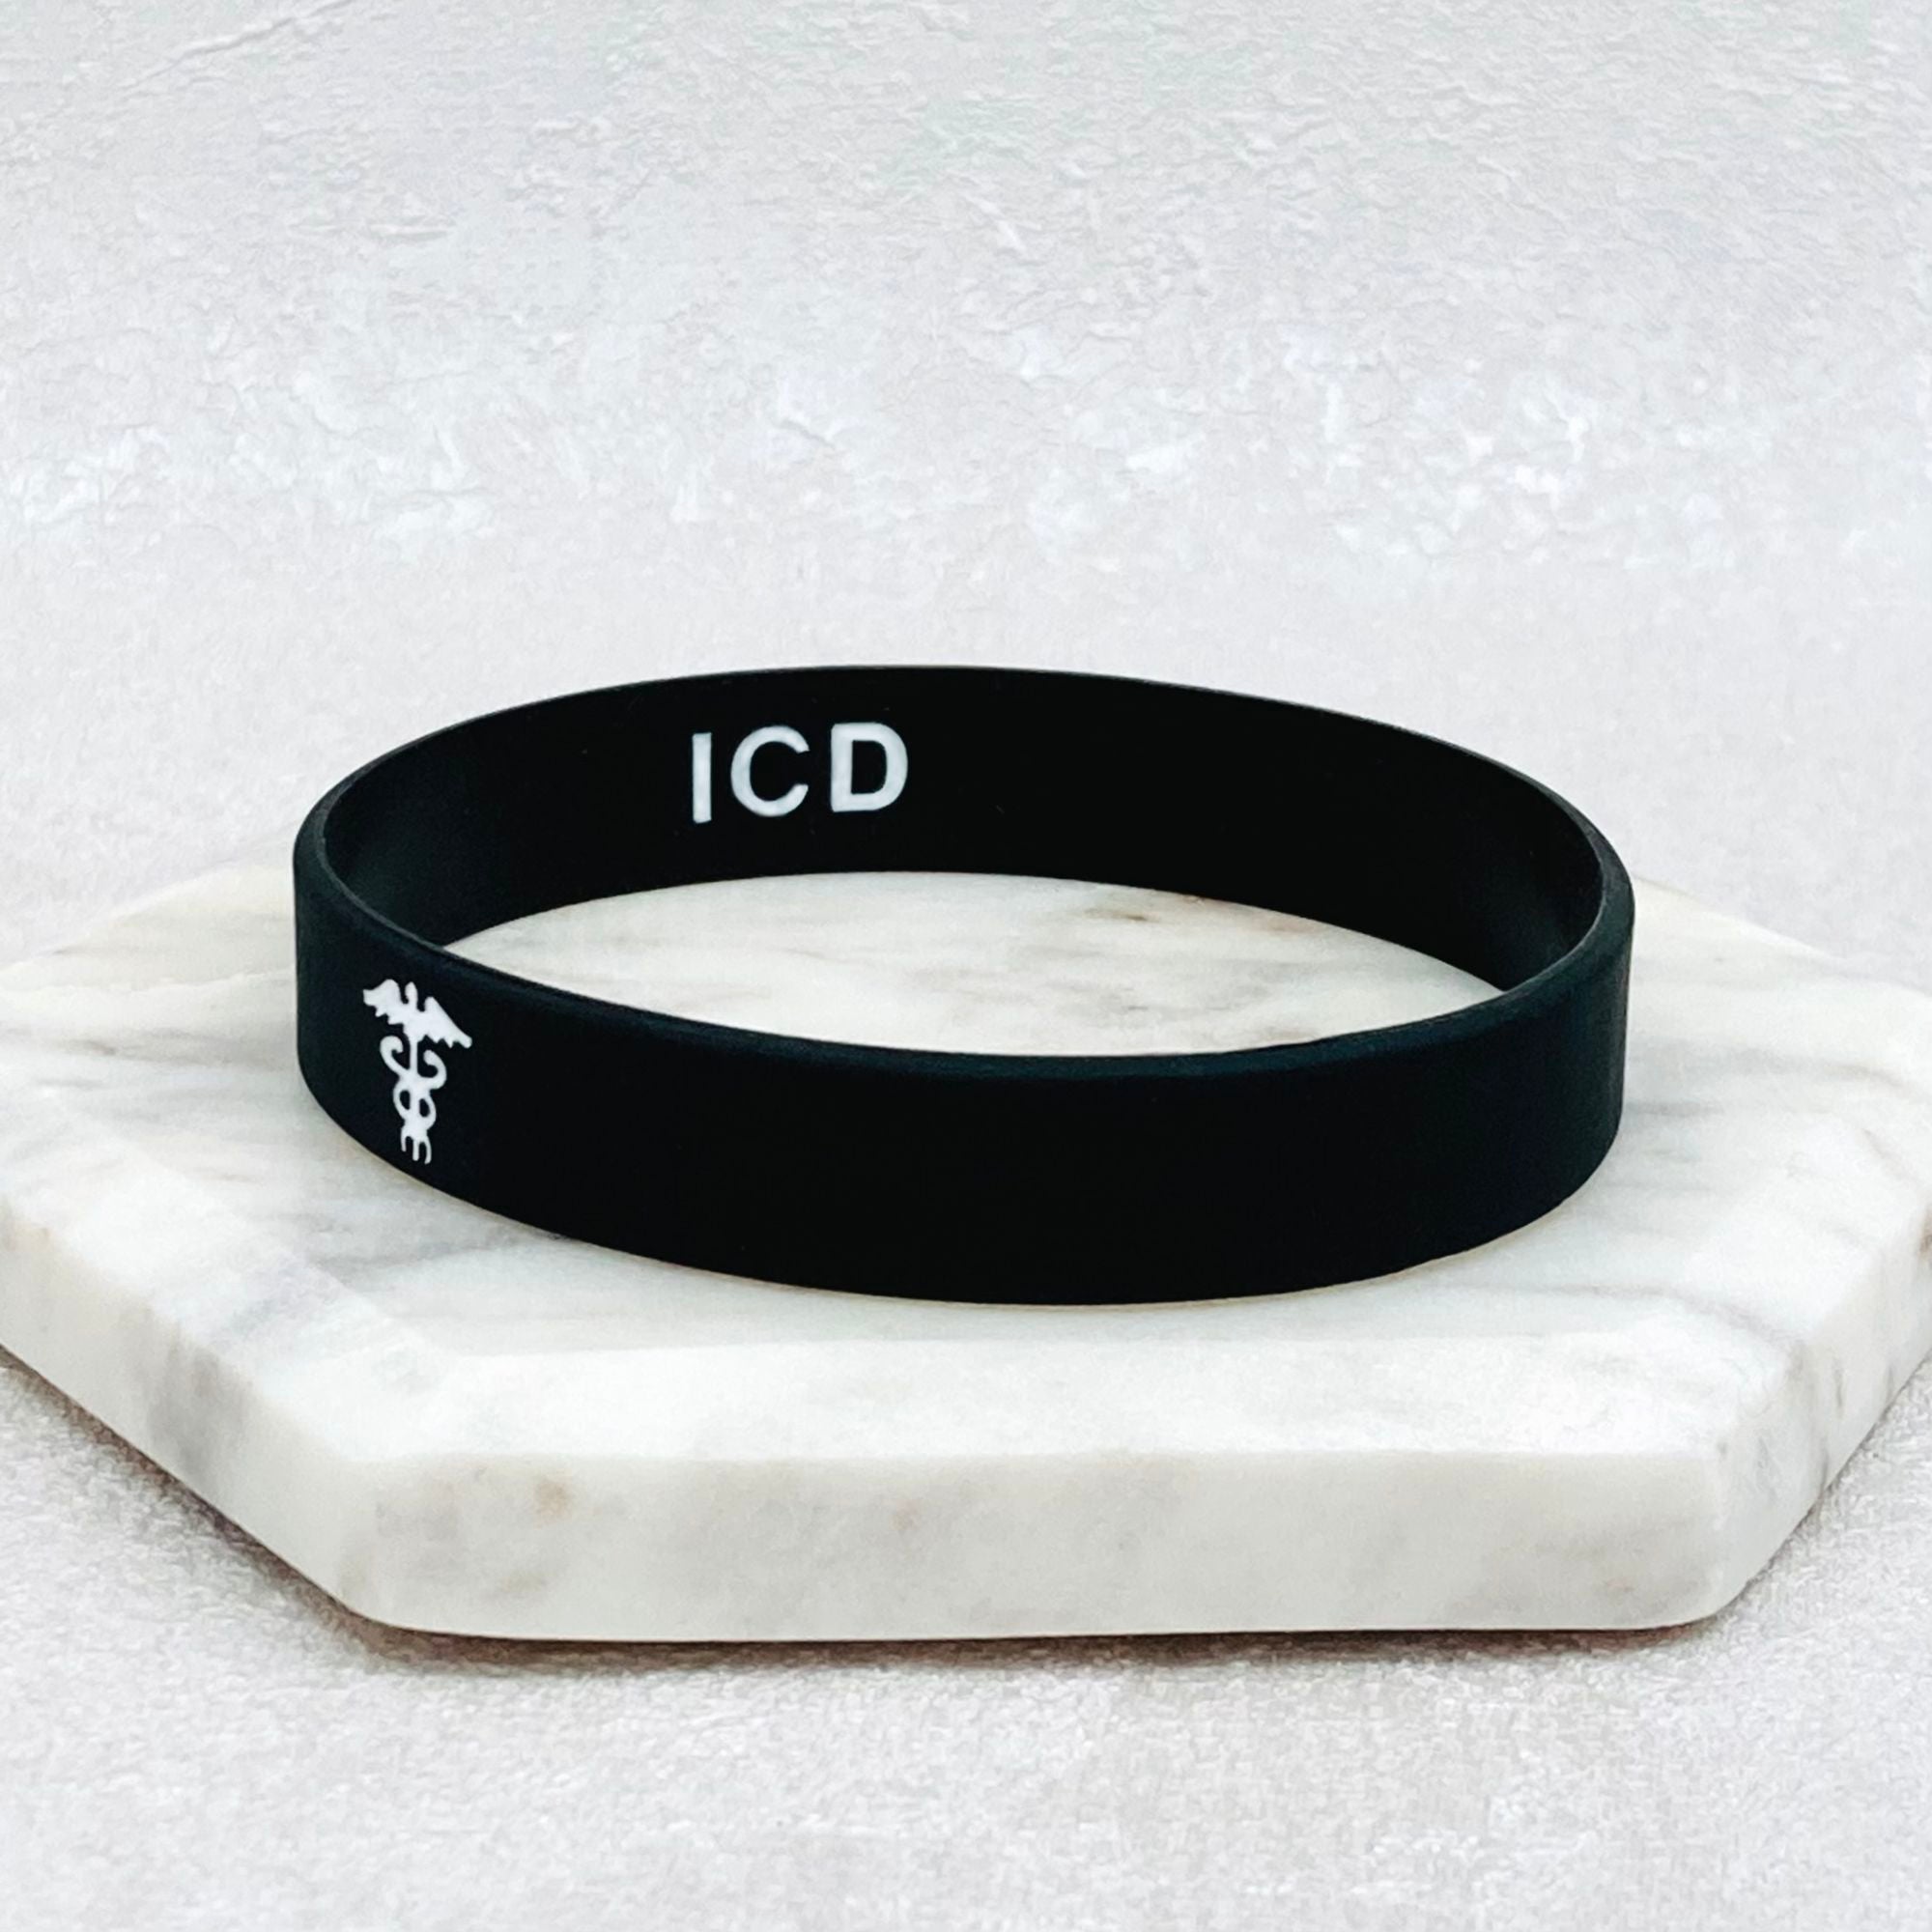 icd medical bracelet wristband for men